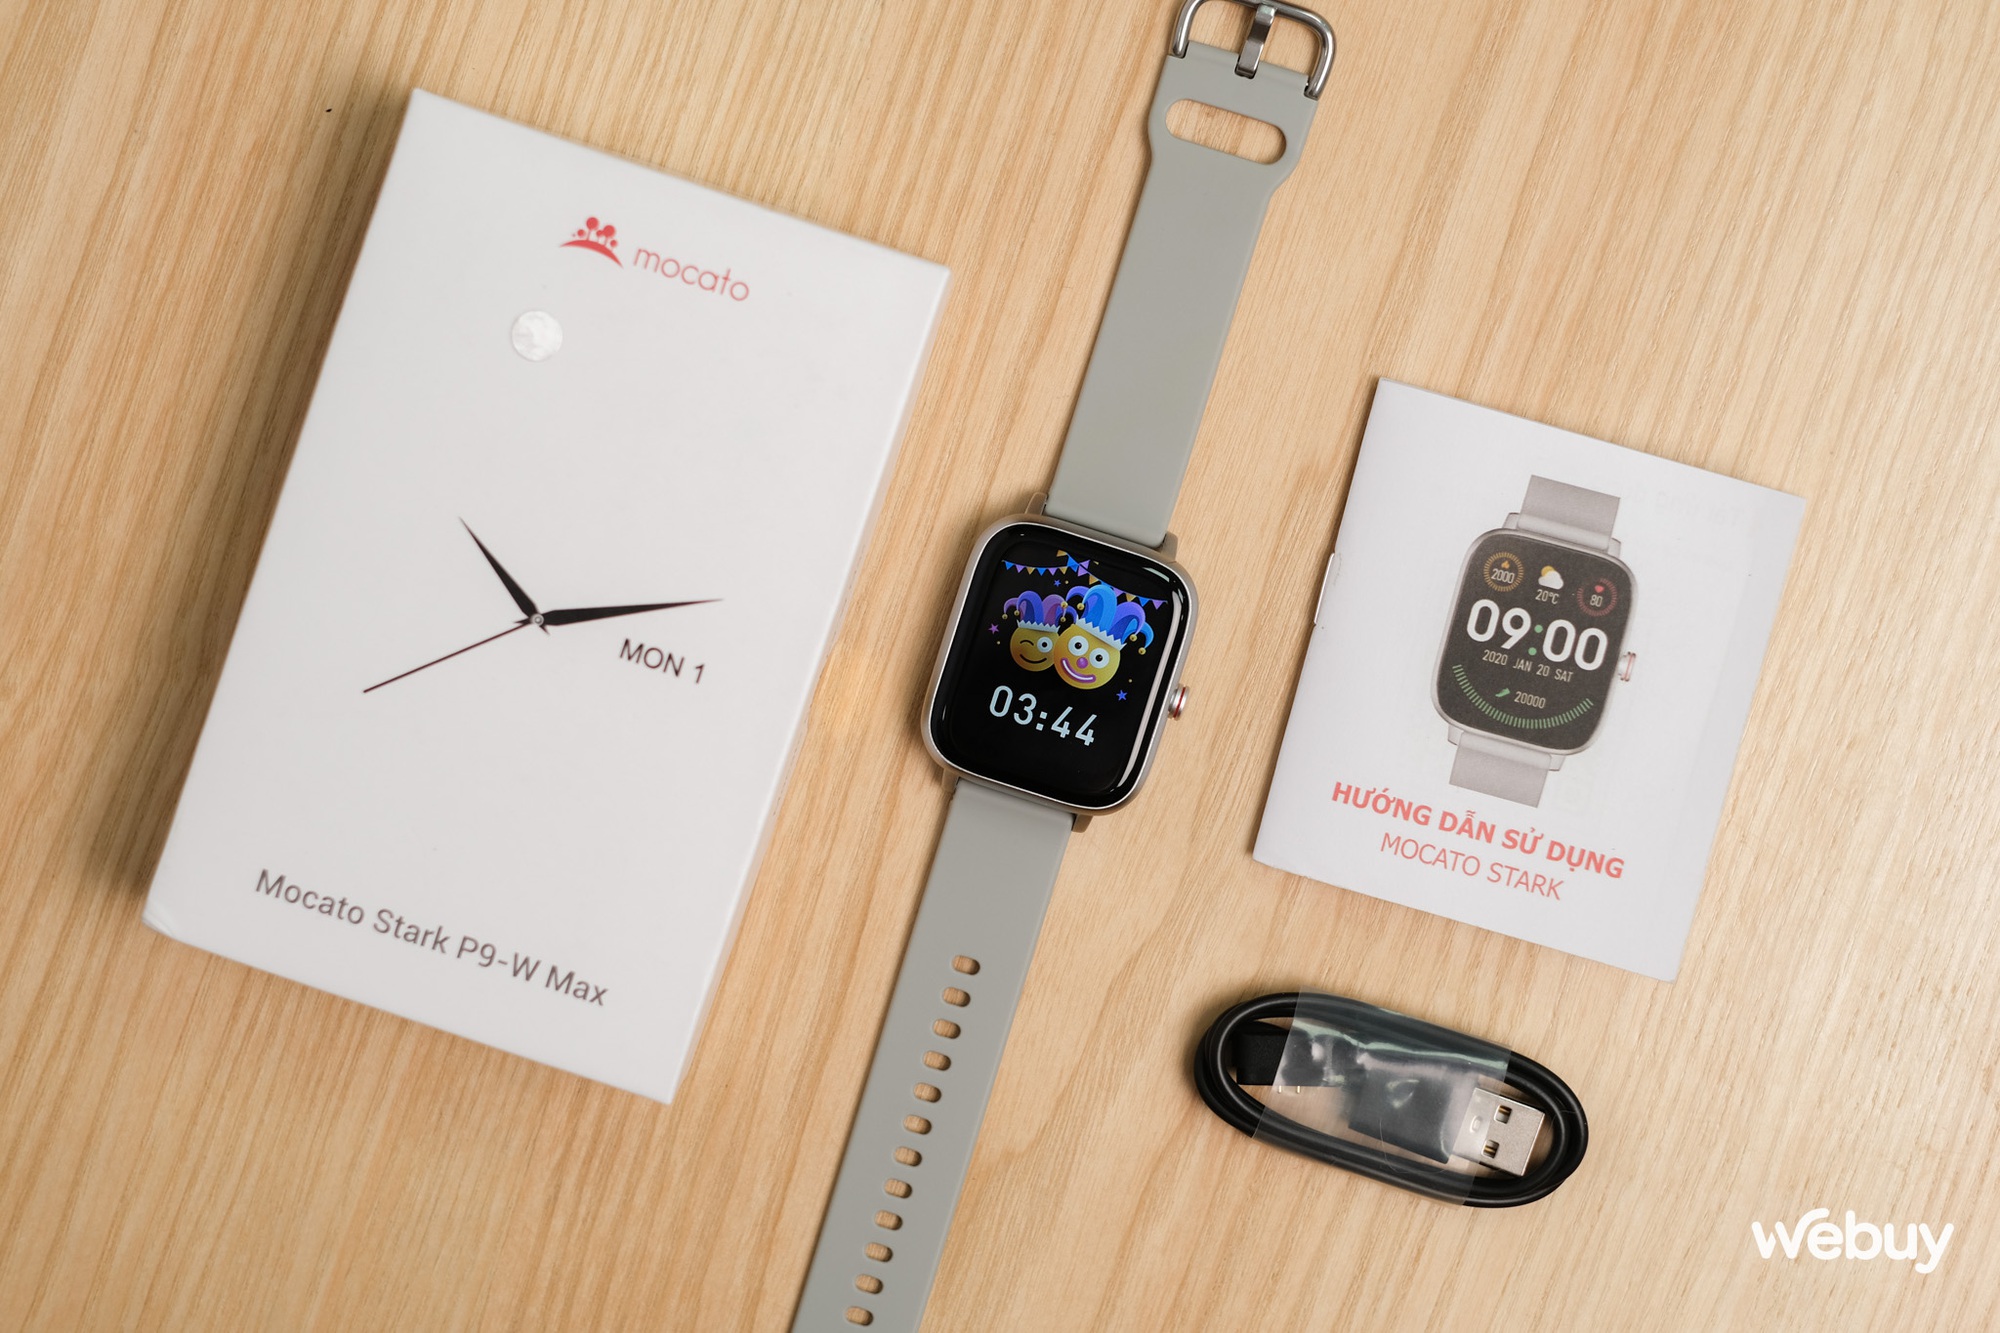 Smartwatch chính hãng giá 690,000 đồng có khung viền nhôm, loa và mic thoại, pin 7 ngày - Ảnh 1.